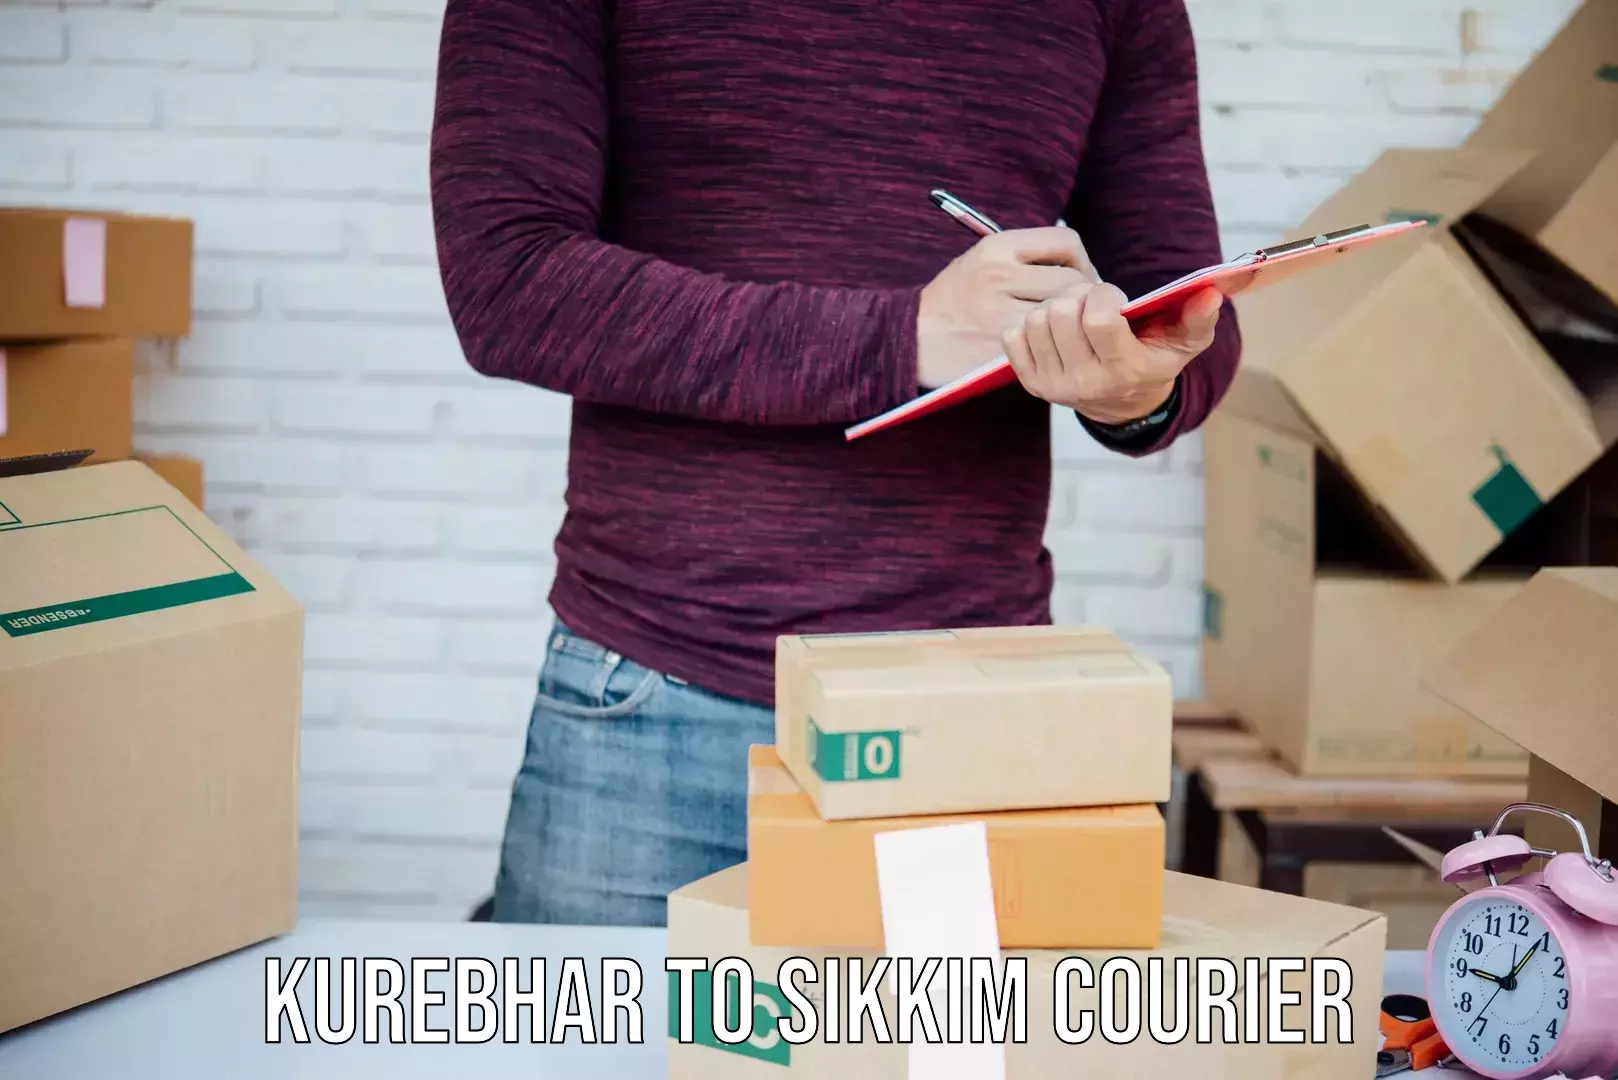 Customer-centric shipping Kurebhar to North Sikkim